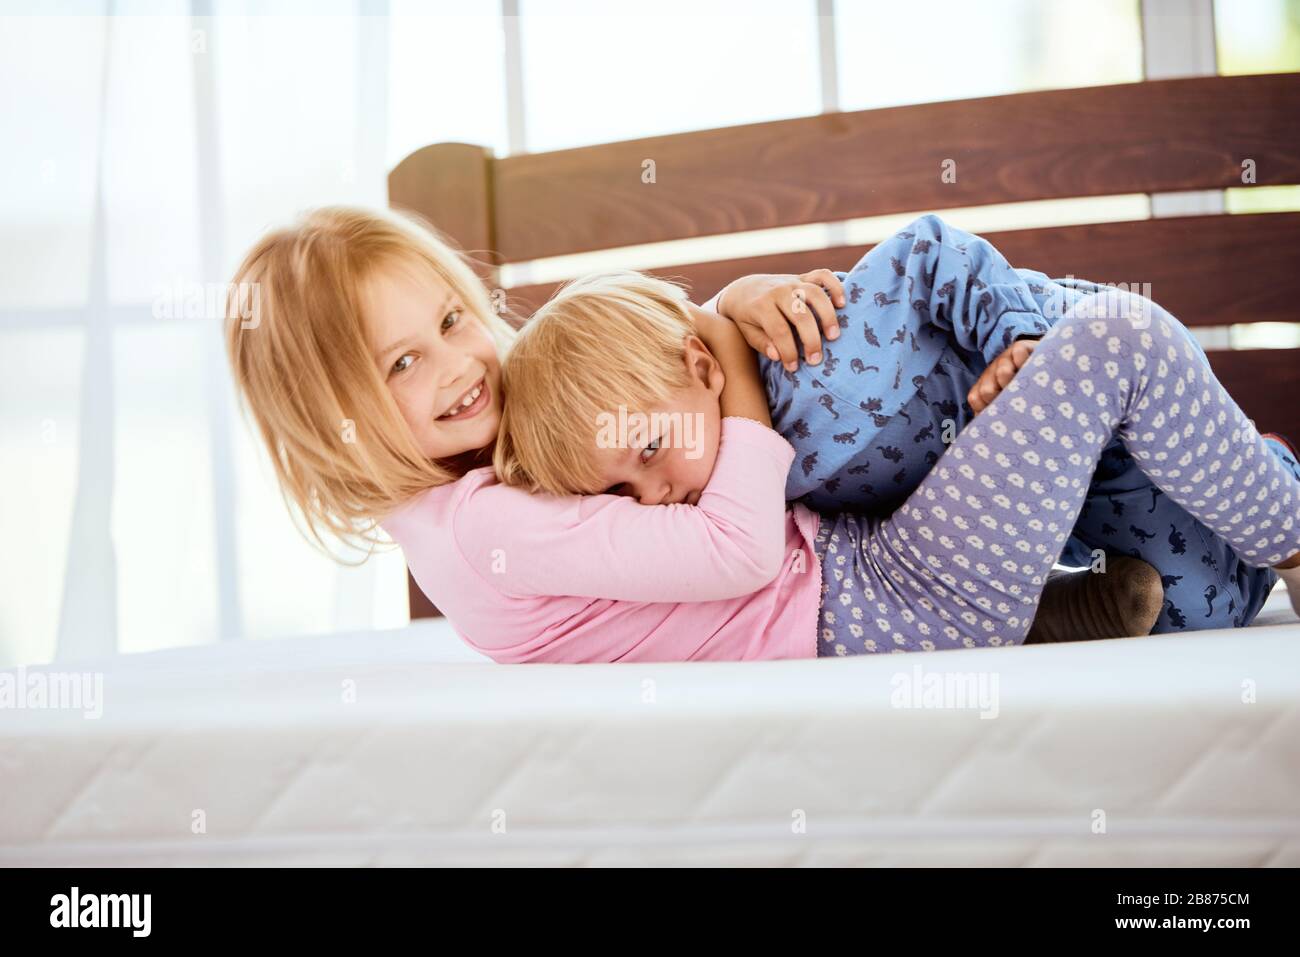 Glückliche kleine Schwester und Bruder im Schlafanzug spielen und Spaß beim liegen auf einer großen bequemen weißen Matratze im Schlafzimmer haben. Glückliche Familie zu Hause Stockfoto